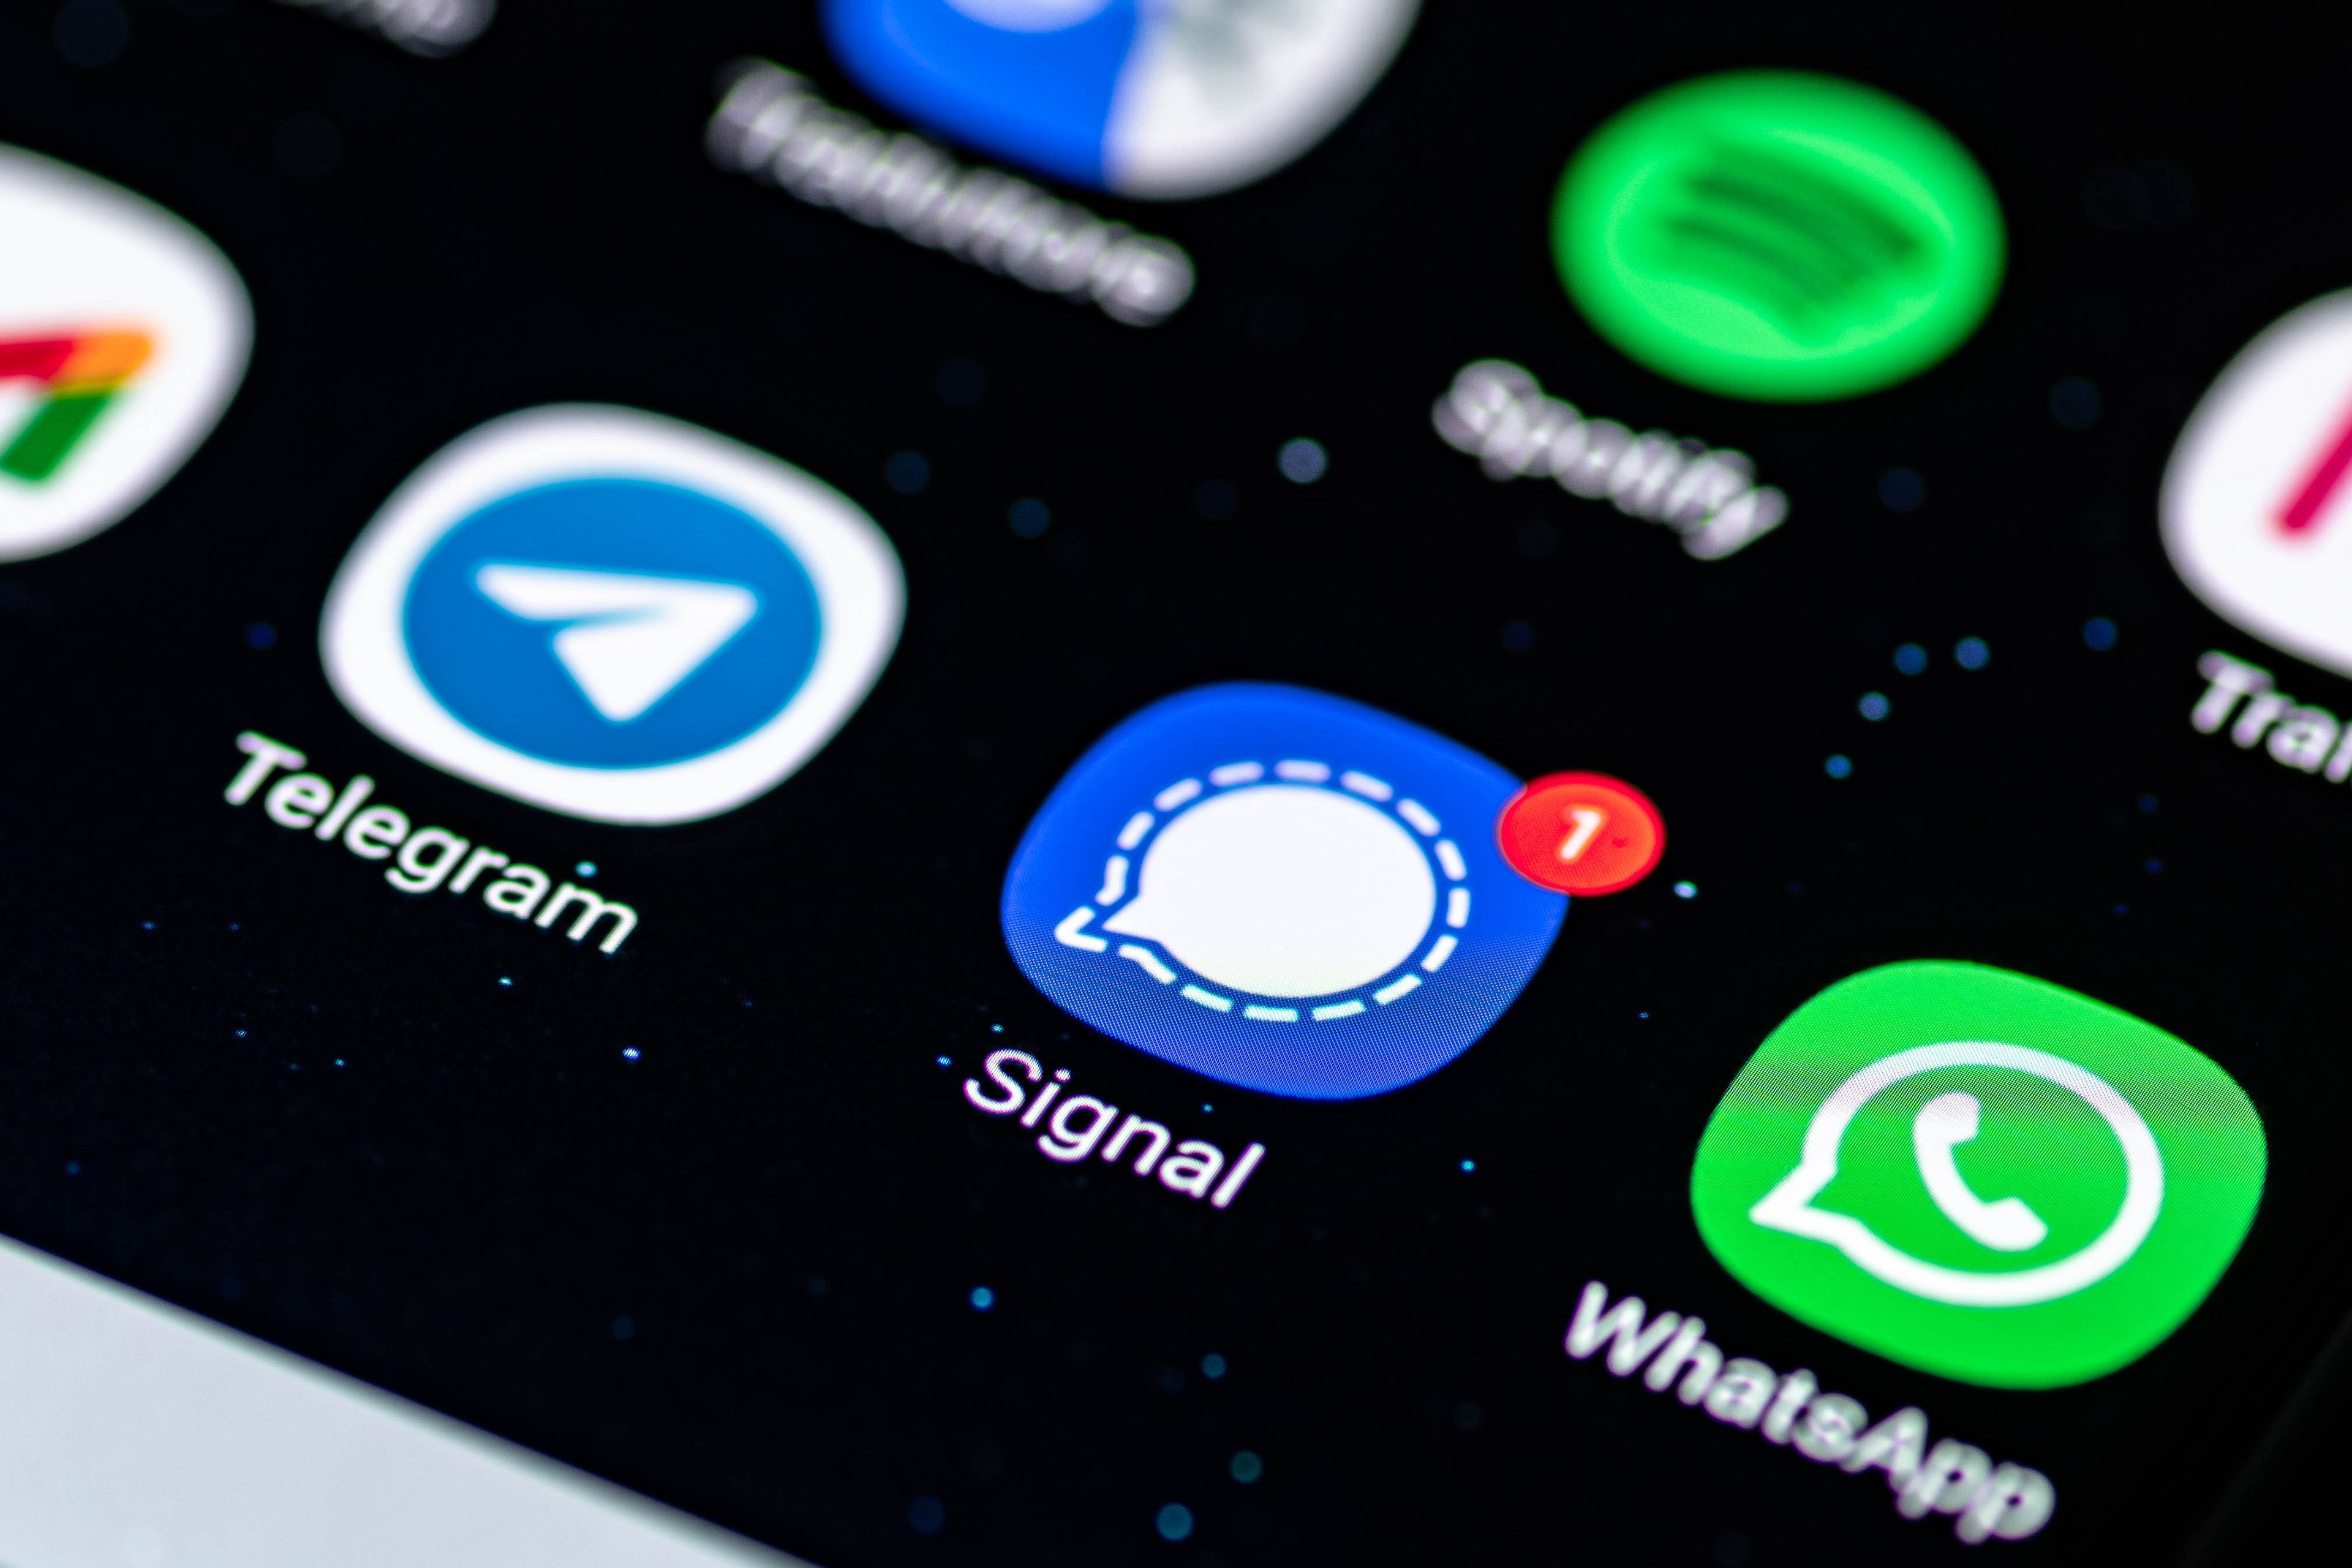 Signal WhatsApp Telegram